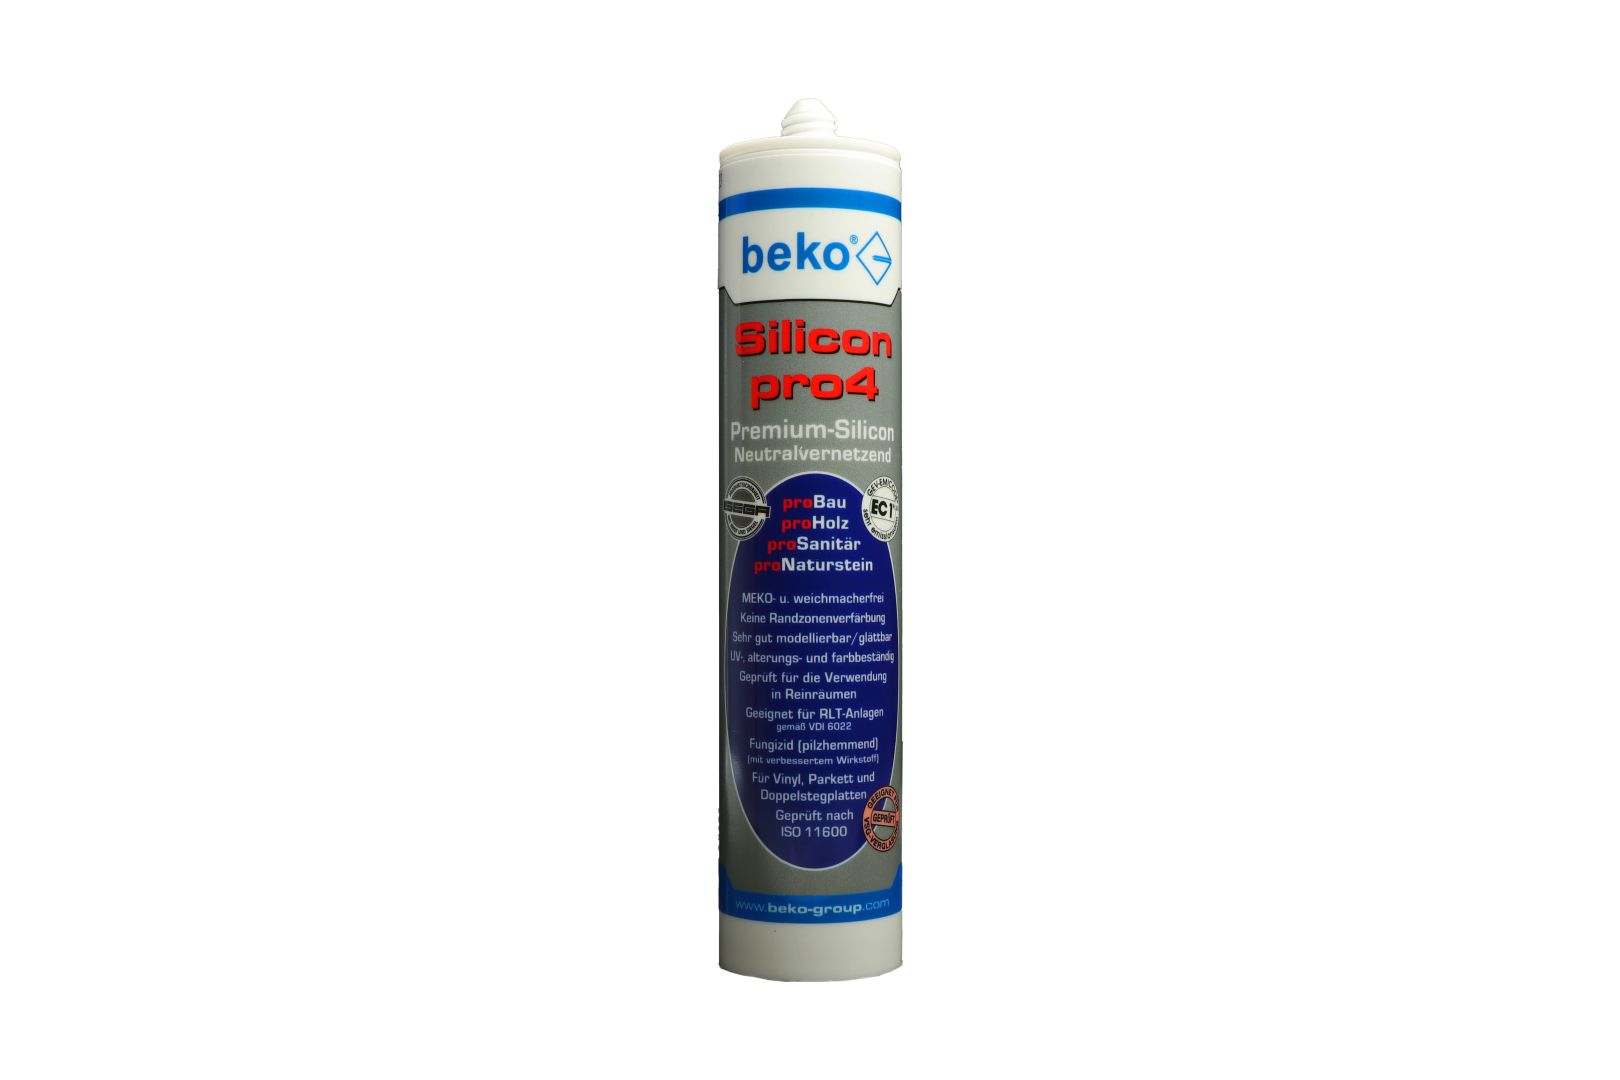 beko Silicon pro4, Premium-Silicon, Silikon-Dichtstoff, neutralvernetzend, beigegrau/esche, 310 ml